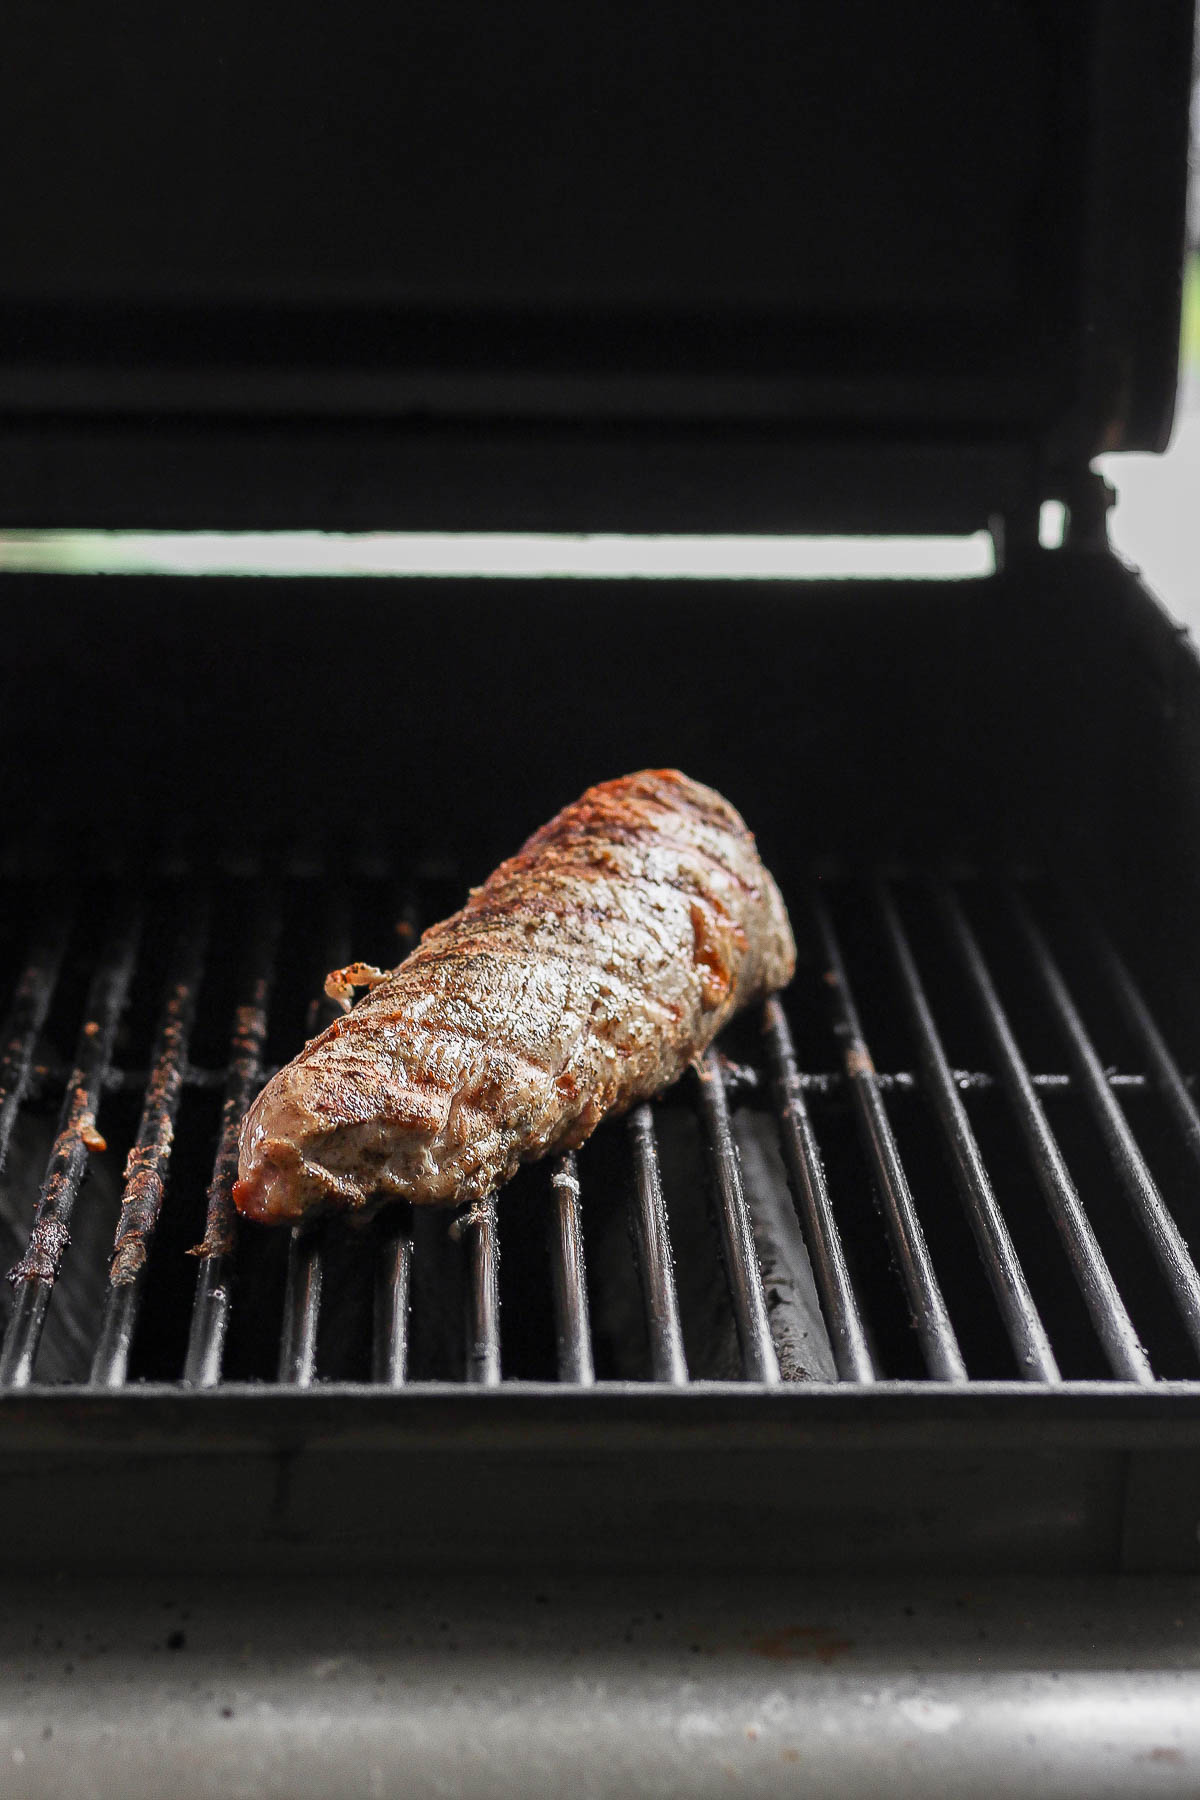 Pork tenderloin on the grill. 